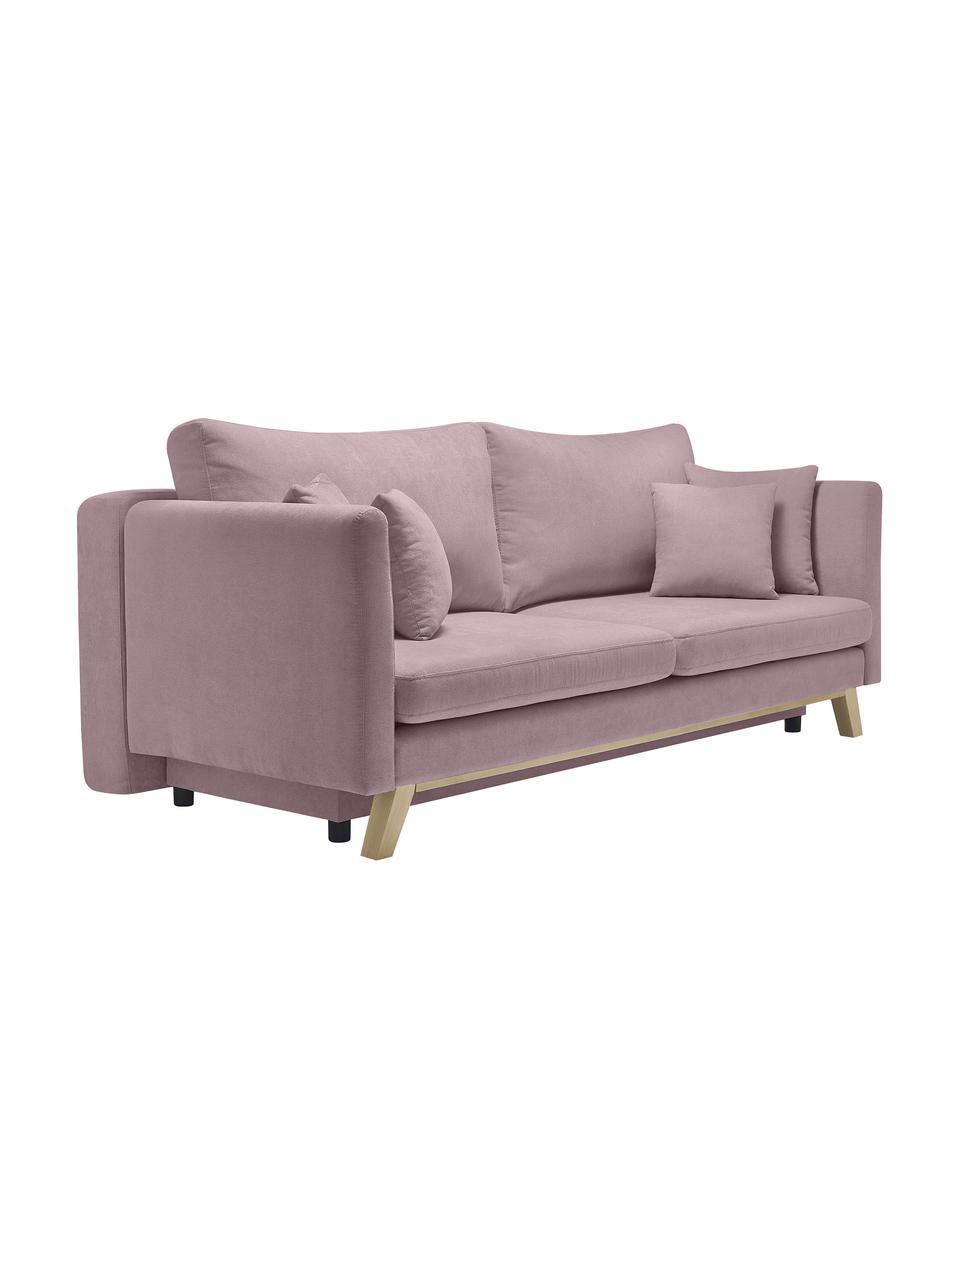 Sofa rozkładana z miejscem do przechowywania Triplo (3-osobowa), Tapicerka: 100% poliester, w dotyku , Nogi: metal lakierowany, Bladoróżowa tkanina, S 216 x G 105 cm